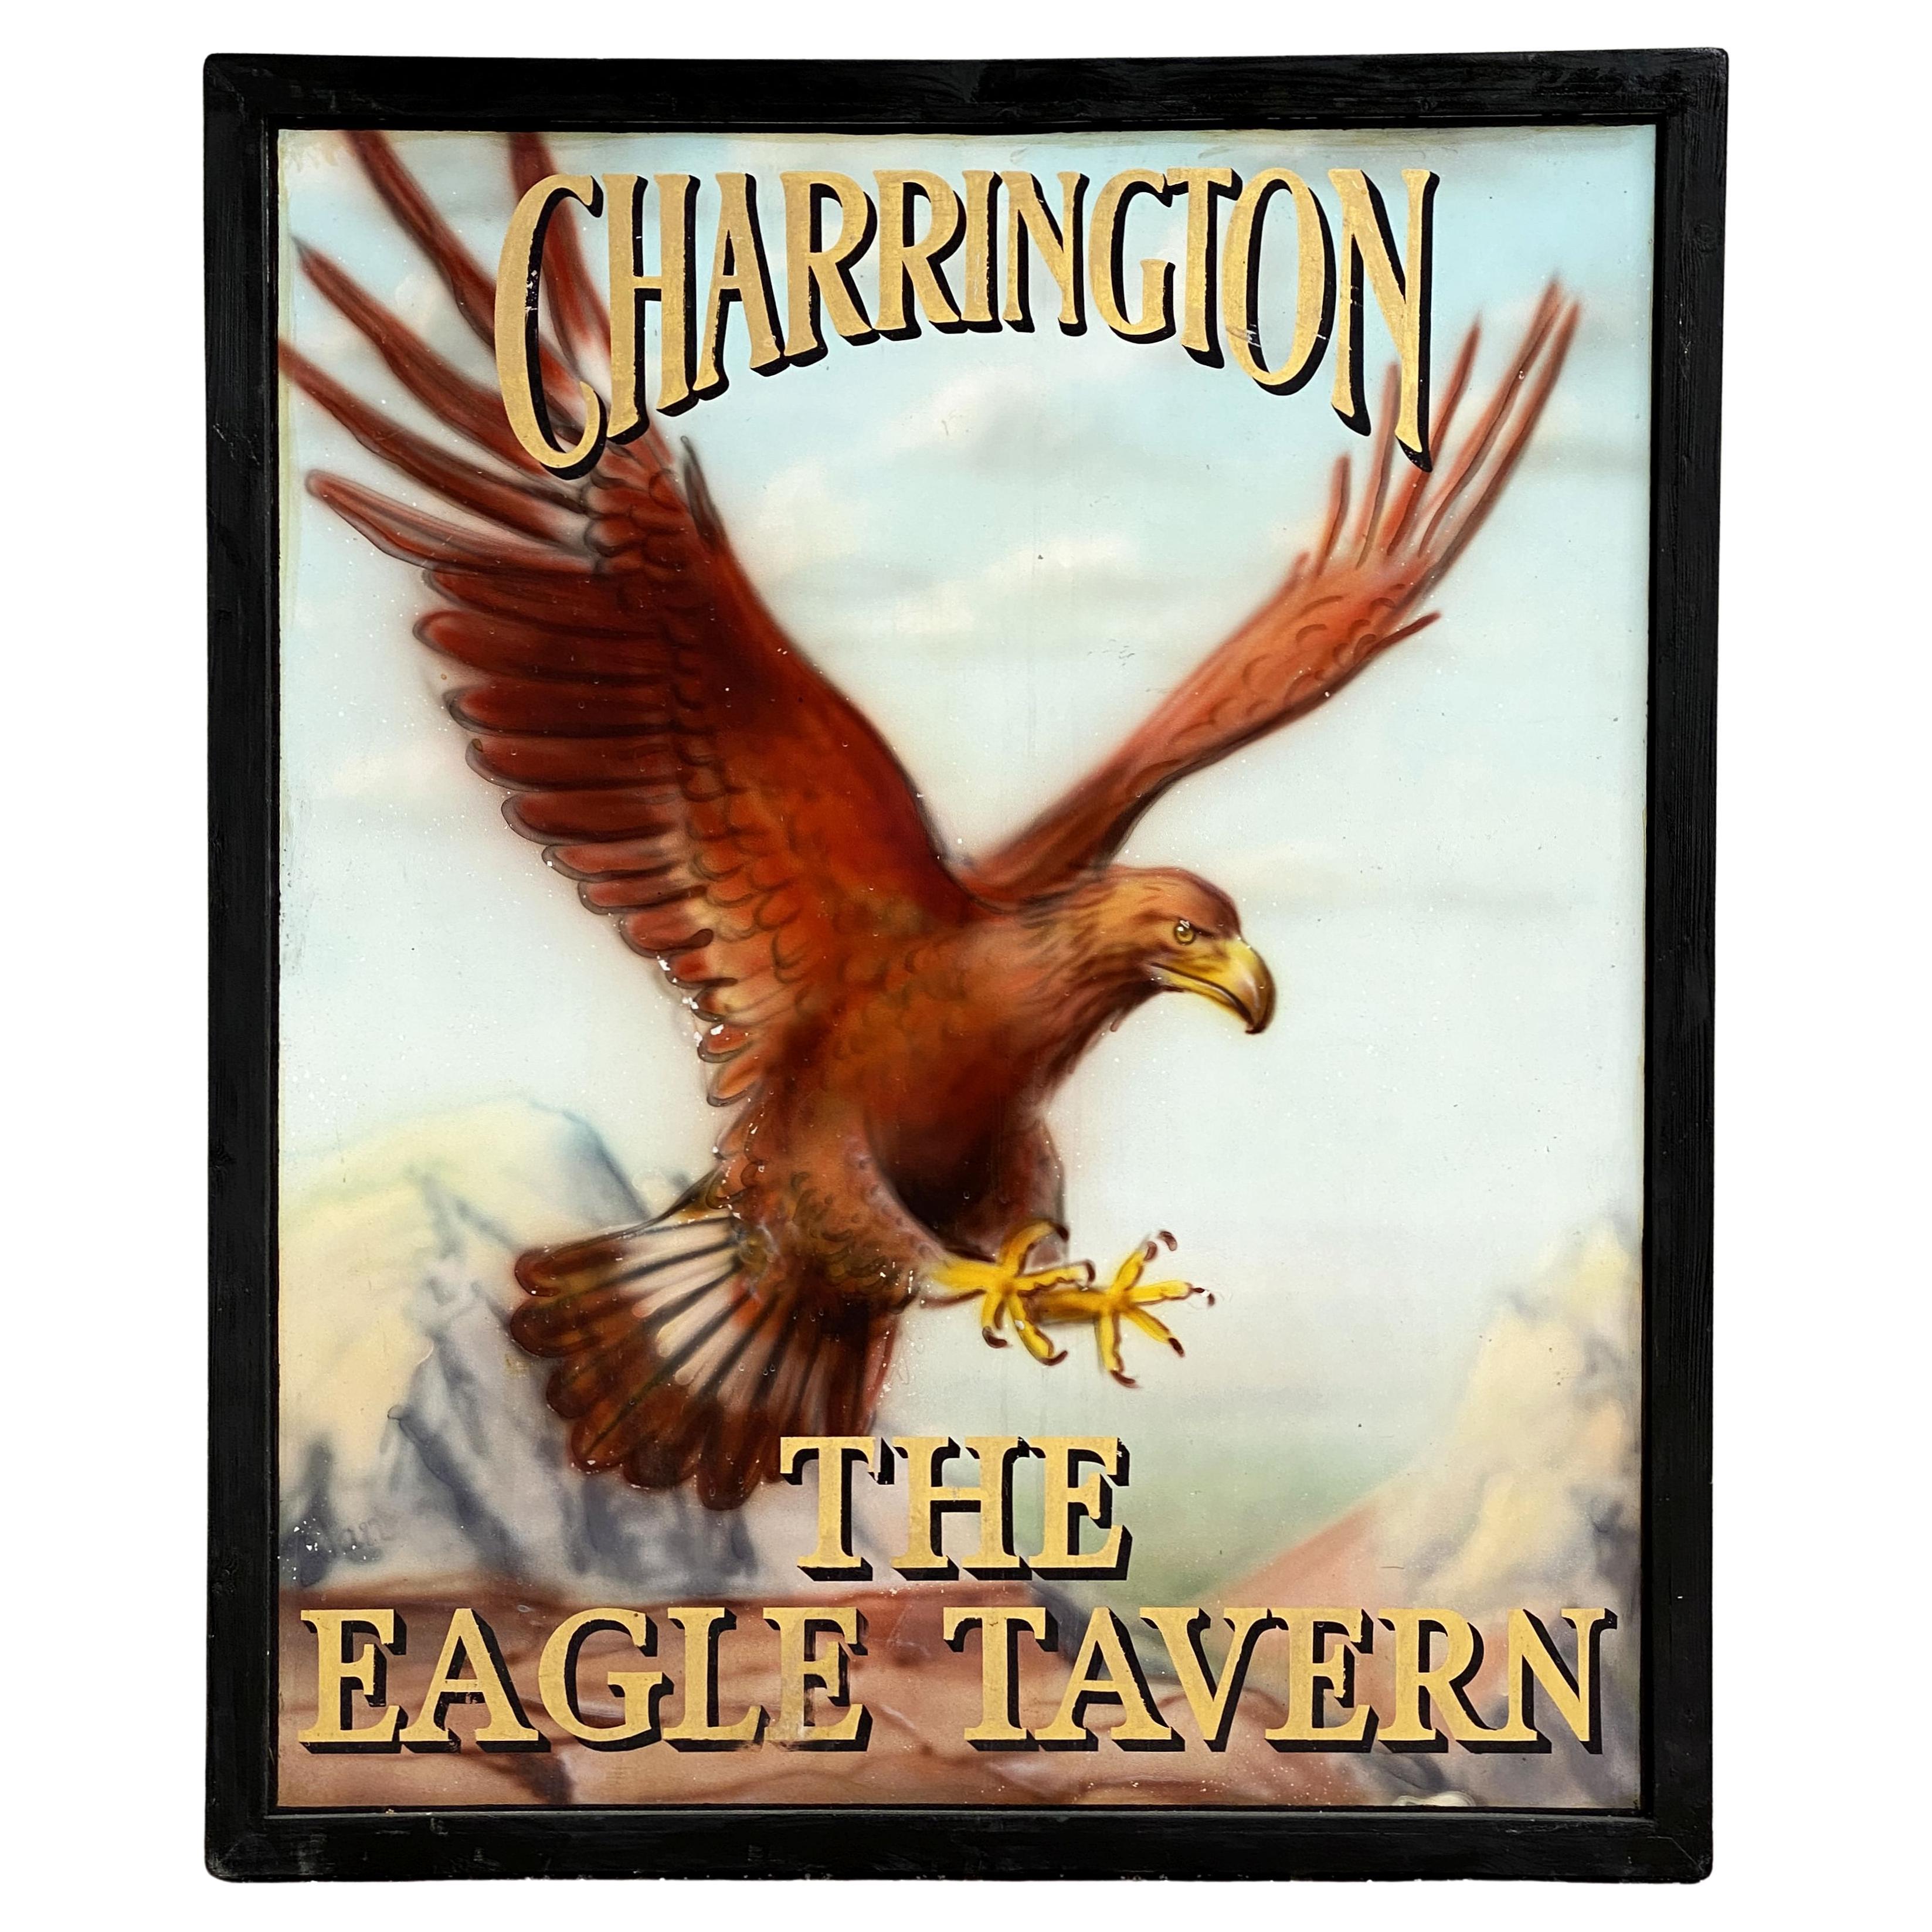 Signe de pub anglaise, "Charrington - The Eagle Tavern"